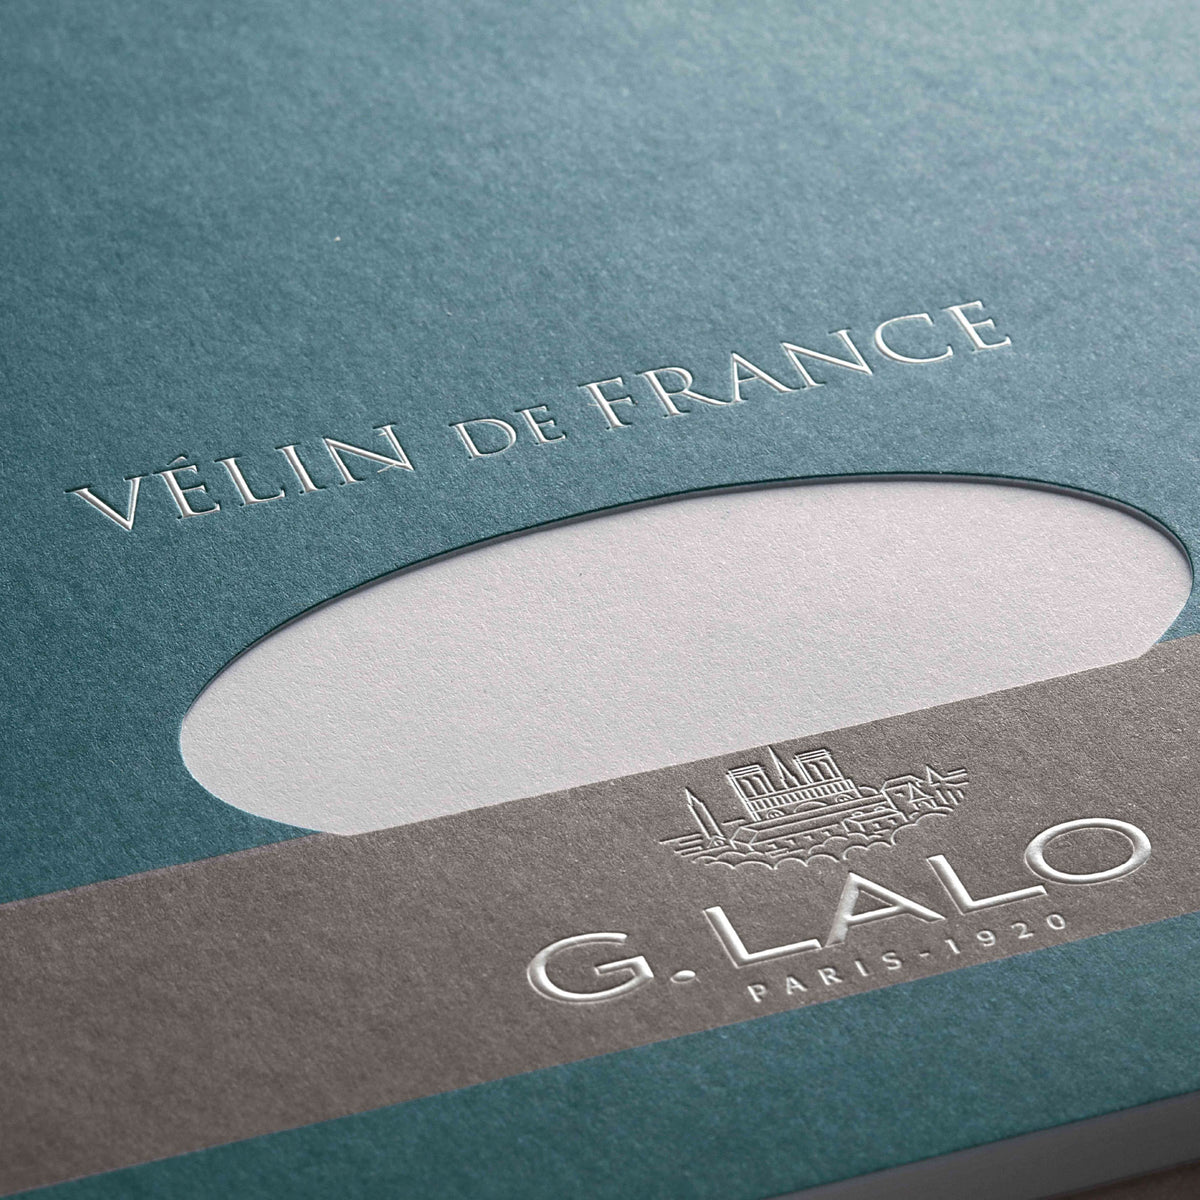 G. Lalo - Envelopes - C6 - Smooth White (Vélin de France)